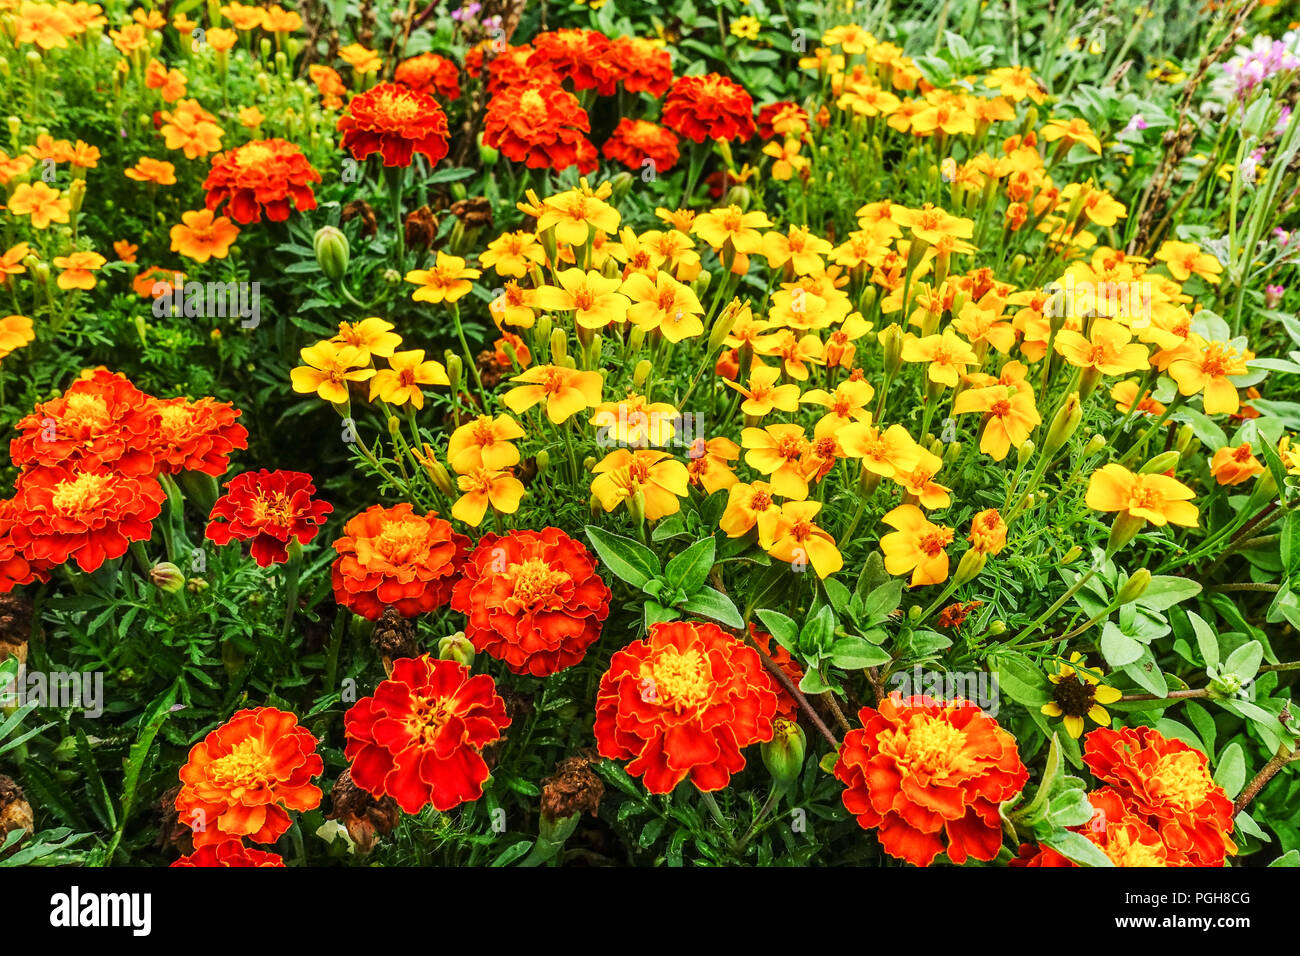 Französische Ringelblumen, rote Tagetes-Patula, gelbe Tagetes-tenuifolia, gemischte Ringelblumen jährliche Blumenbeete Stockfoto